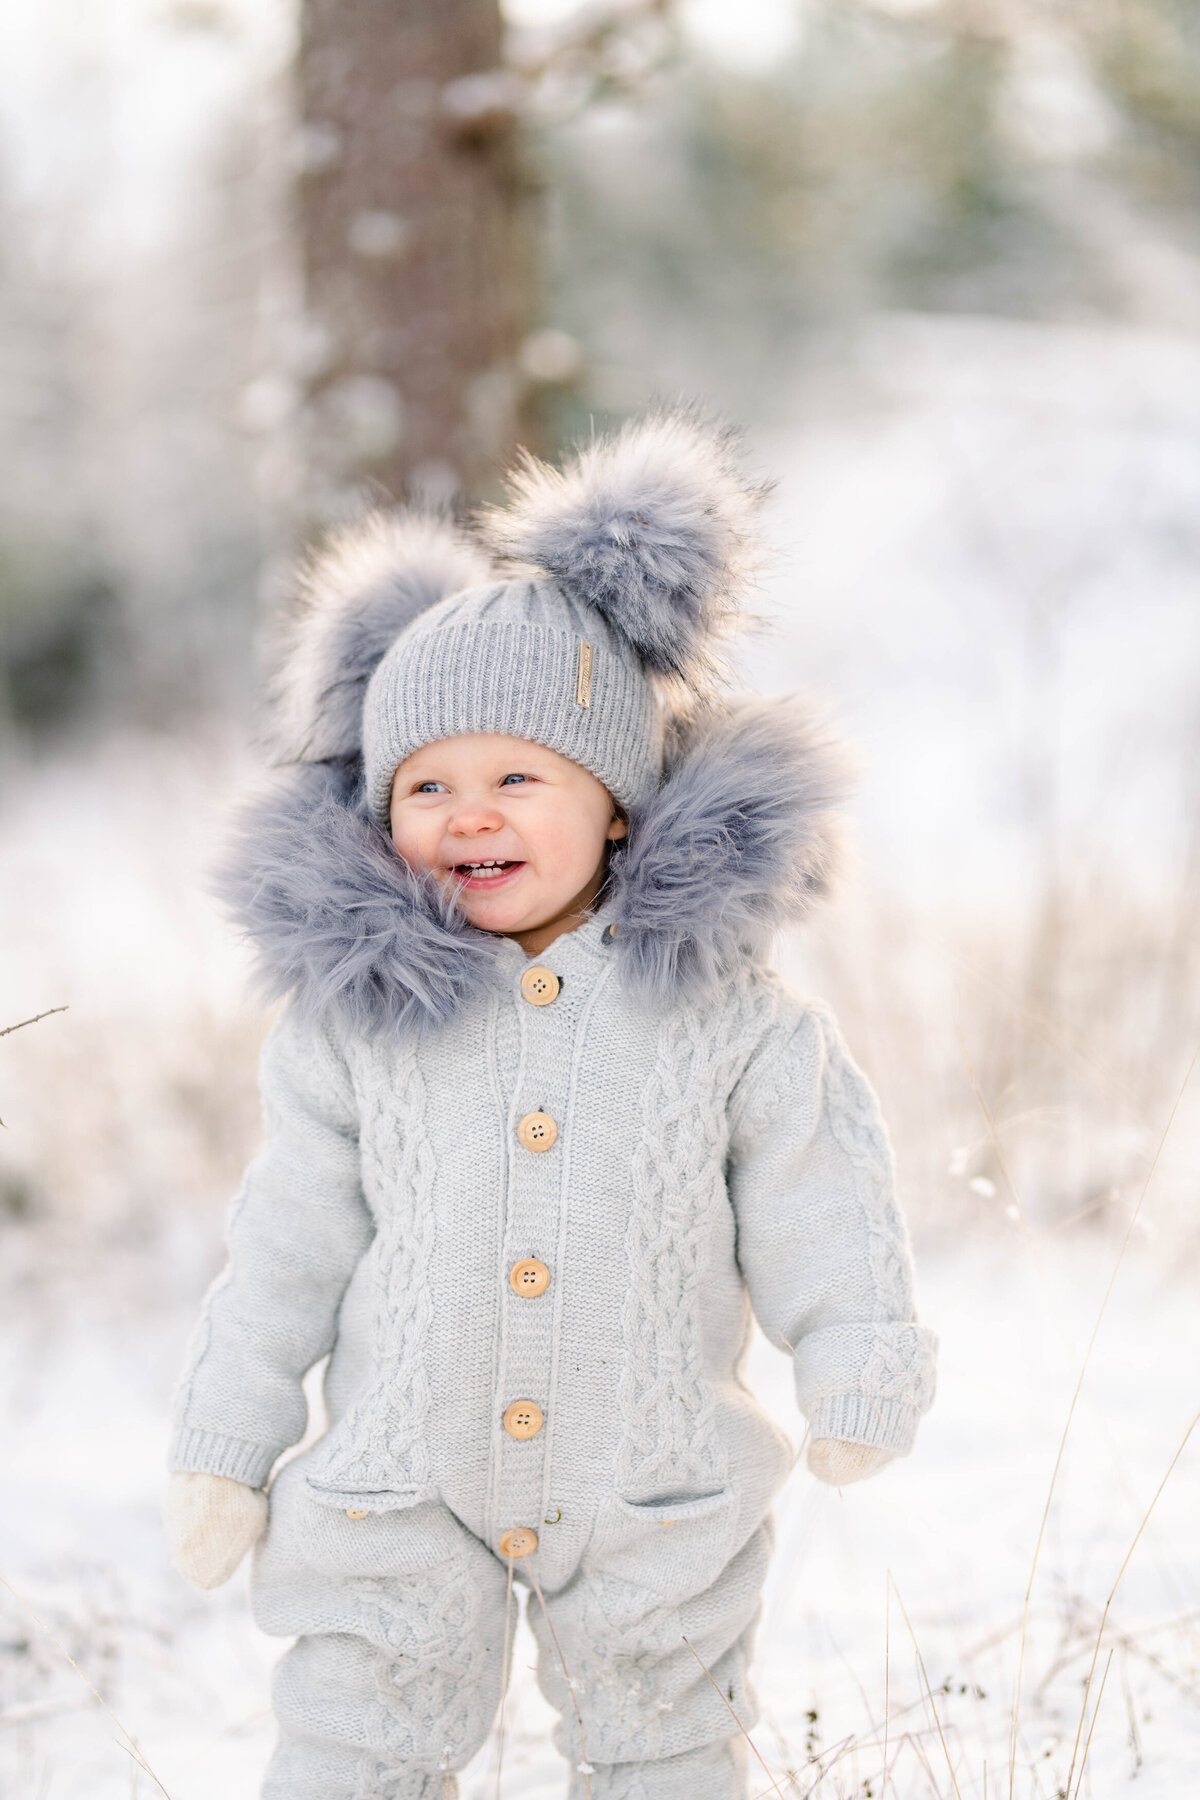 Barnfotografering i snö, Värnamo